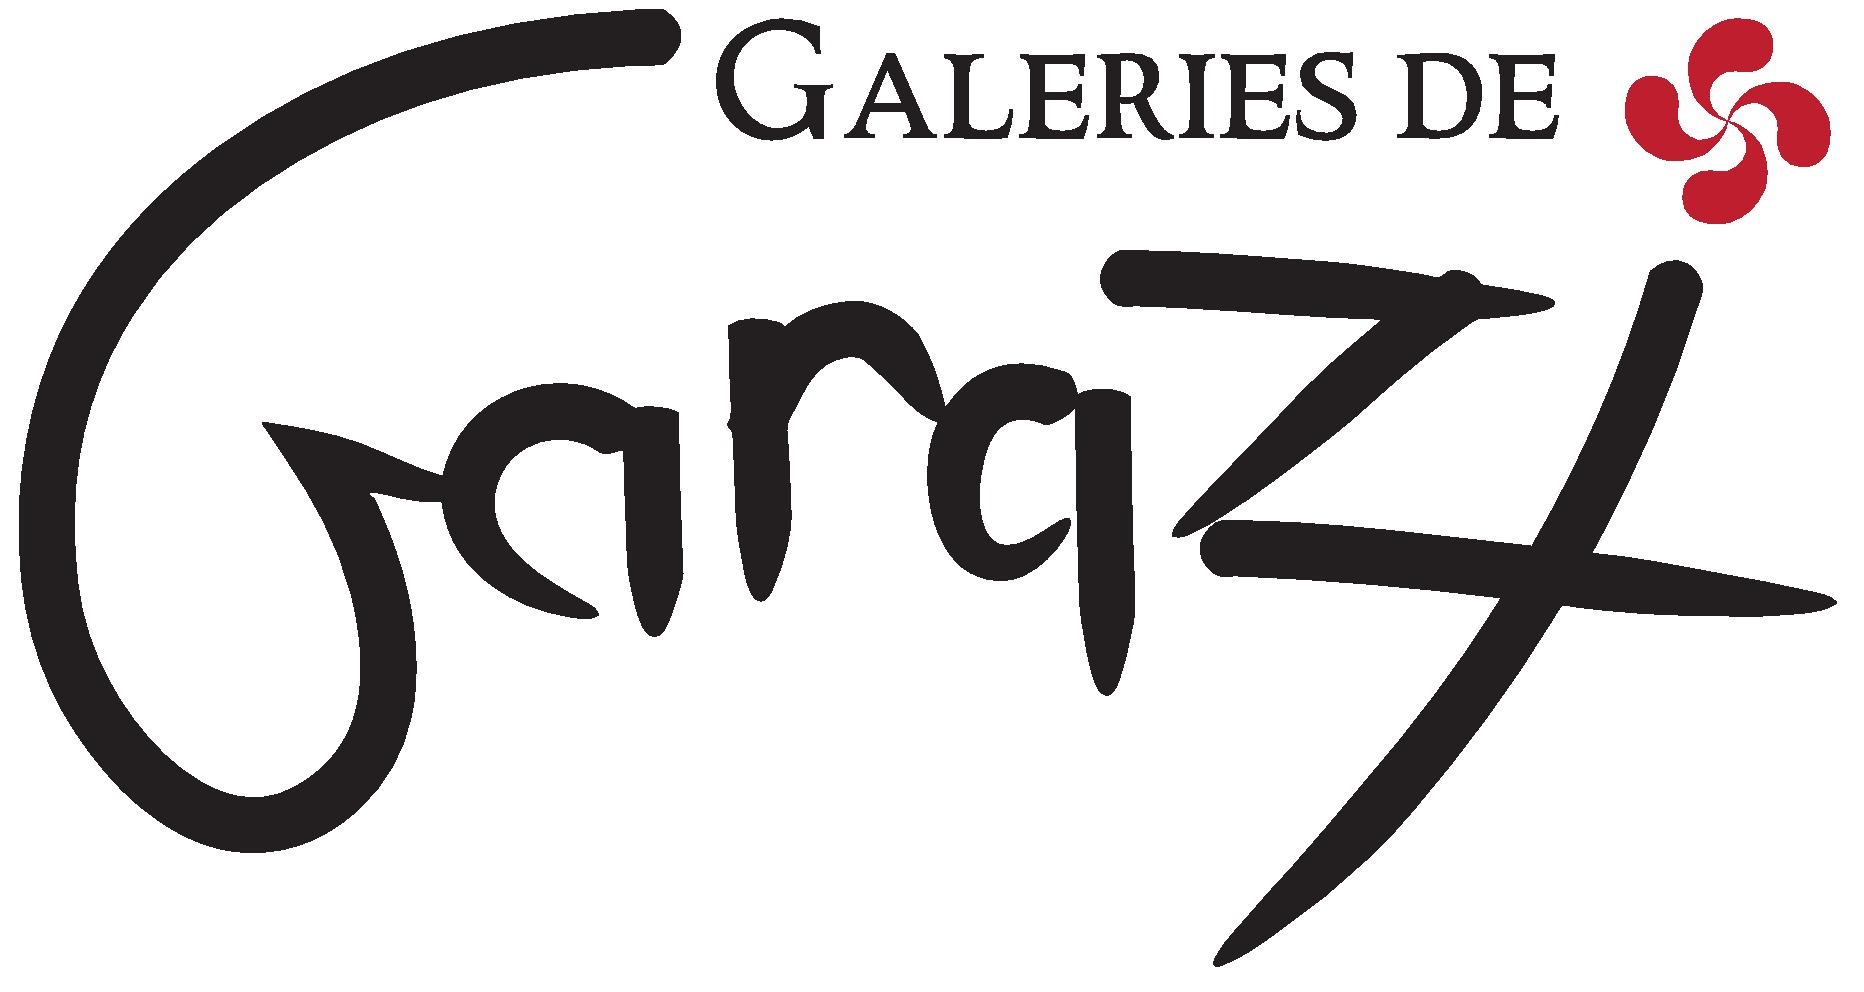 galeries-garazi-logo